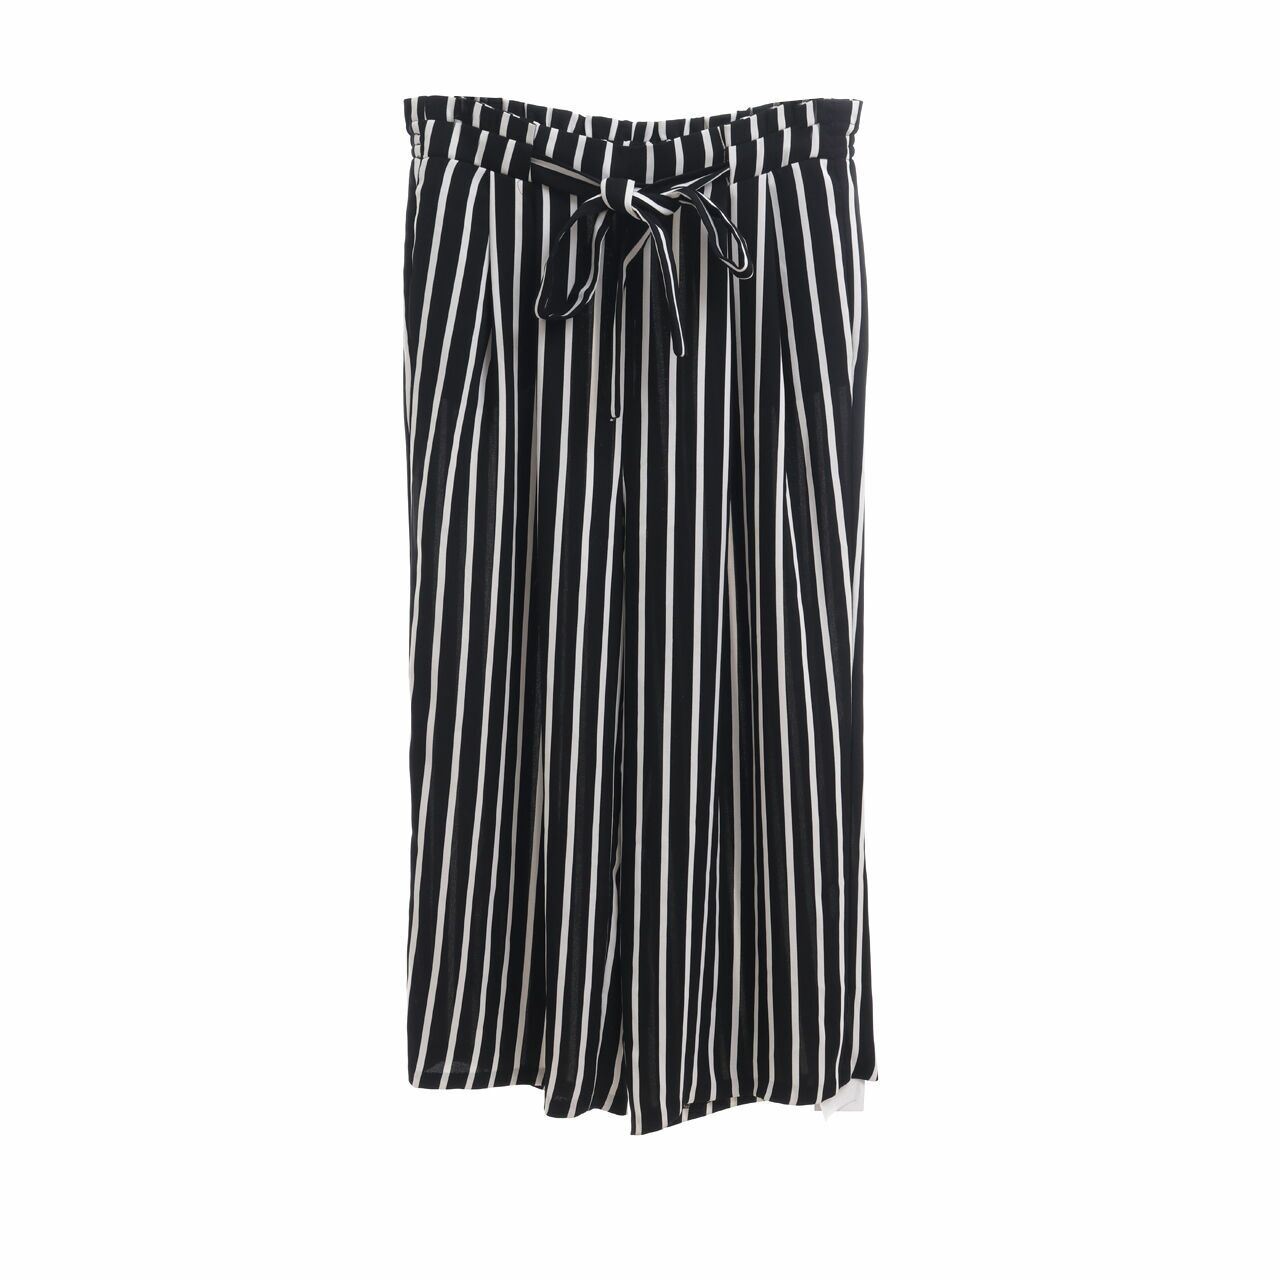 Zara Black & White Stripes Celana Panjang